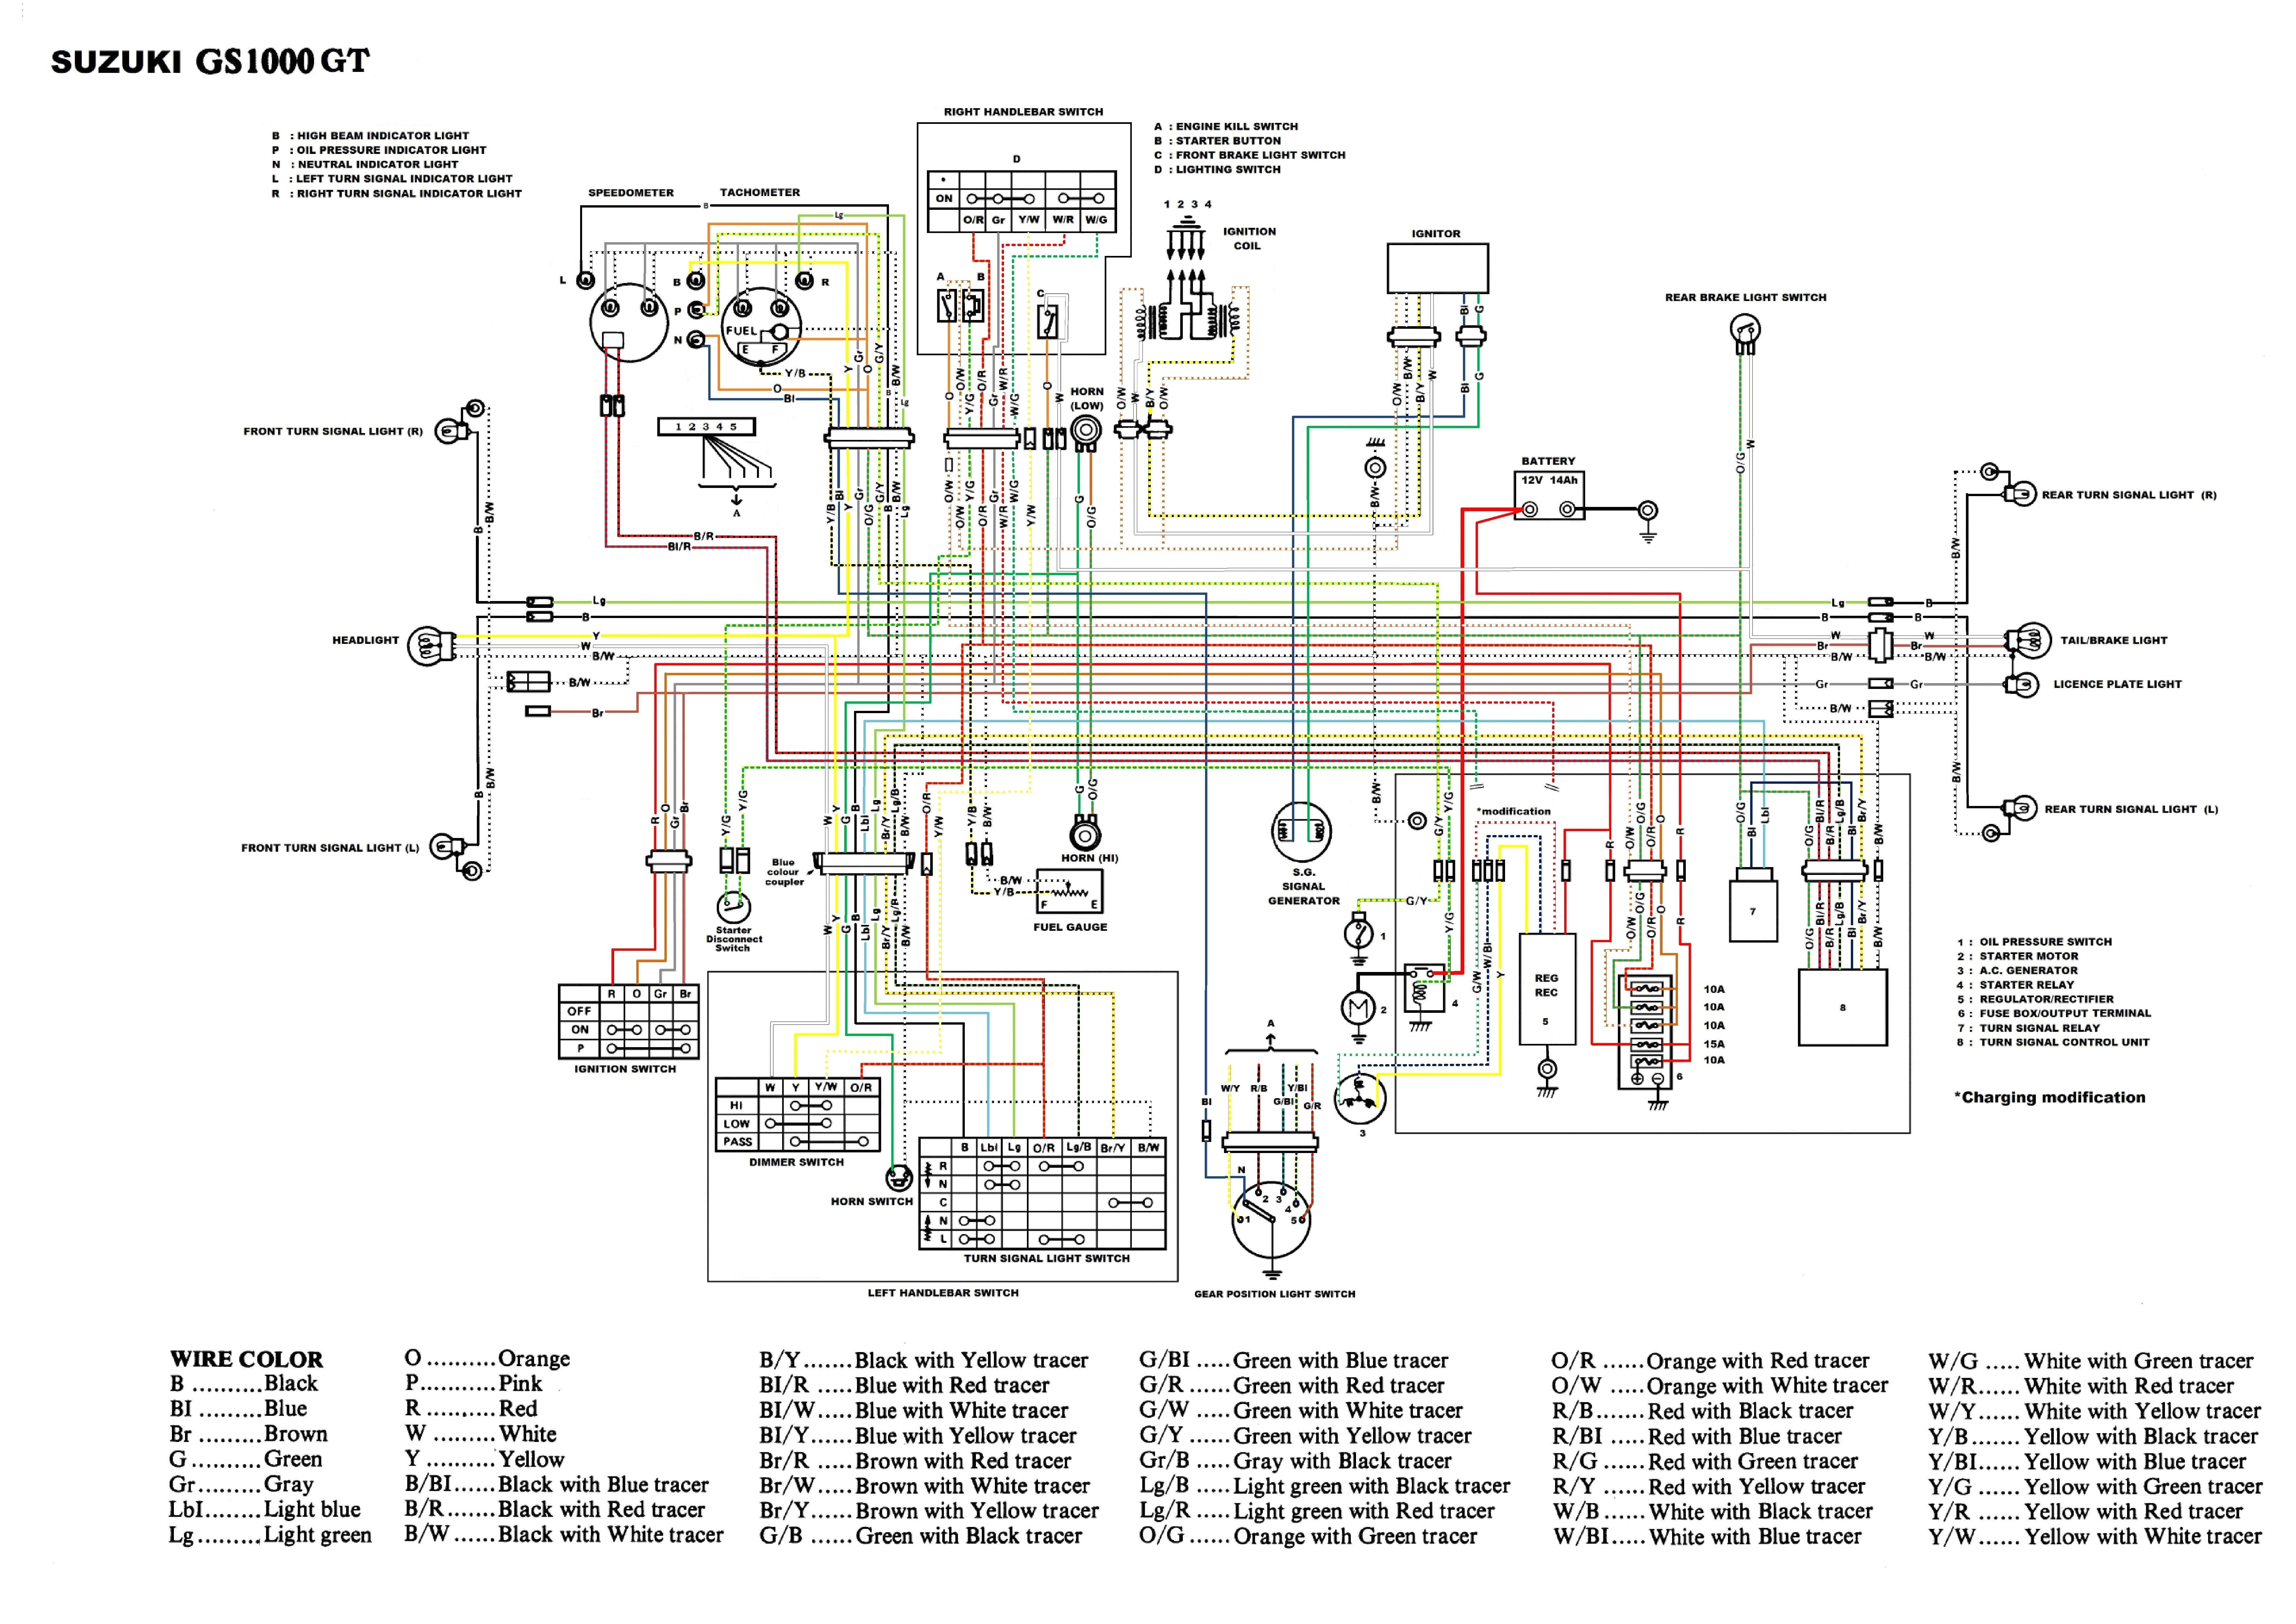 Suzuki Motorcycle Wiring Diagram Suzuki Electrical Wiring Diagrams Wiring Diagram Technic